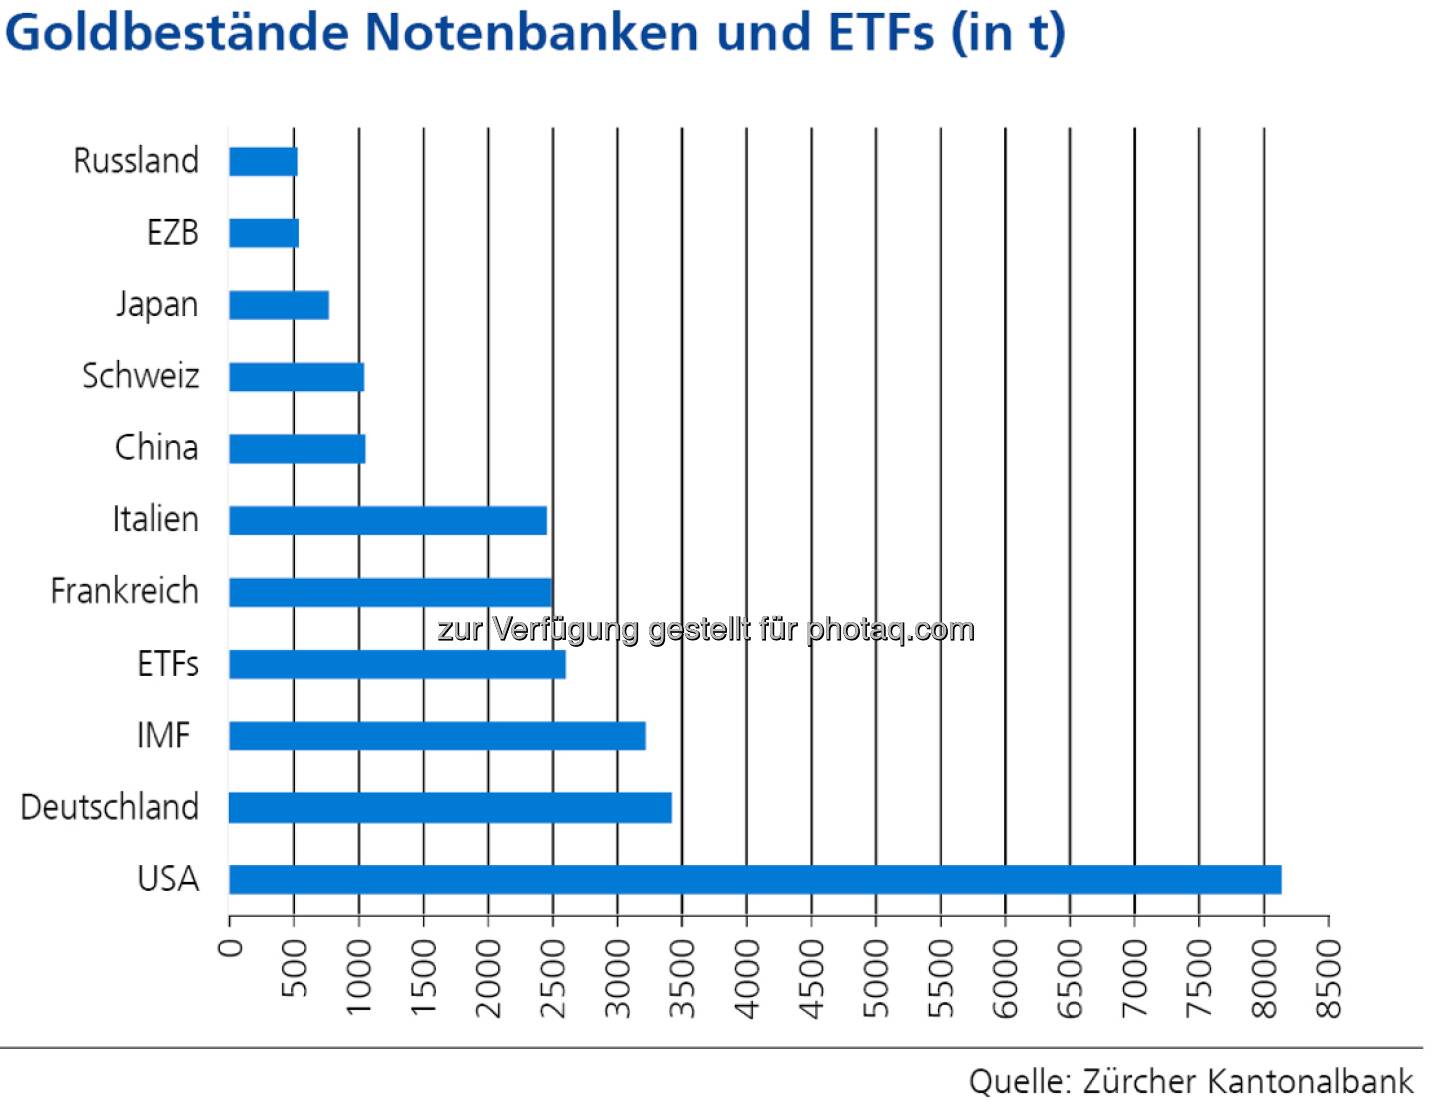 Goldbestände Notenbanken und ETFs (in t), siehe http://www.christian-drastil.com/2013/04/25/wo_das_gold_lagert_goldbulle_zkb_mit_starker_grafik (c) Zürcher Kantonalbank